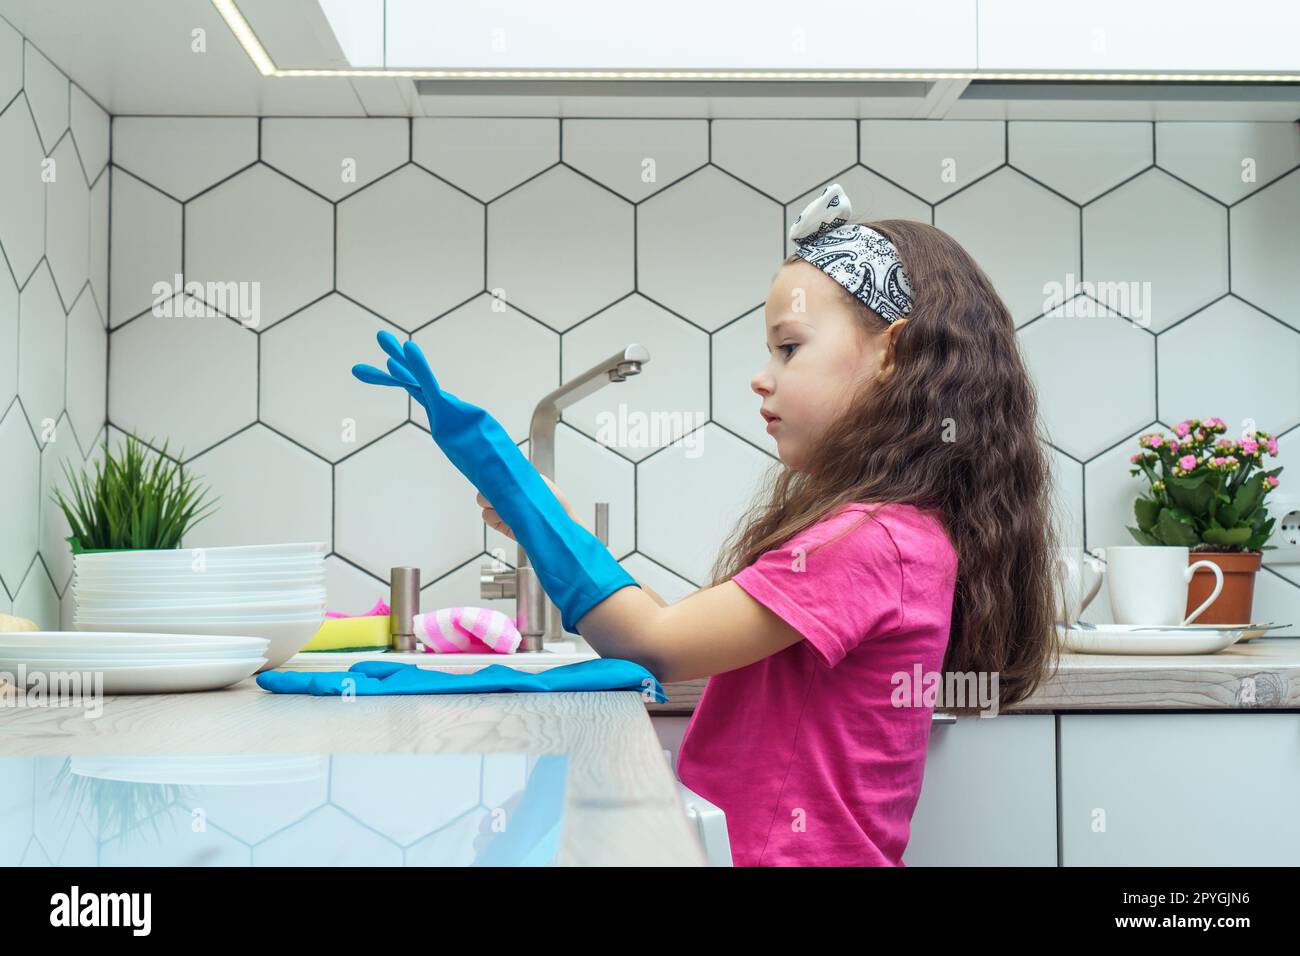 Nettes kleines Mädchen, das blaue Haushaltshandschuhe anzieht, um Geschirr abzuspülen. Hausreinigung, persönliche Schutzausrüstung. Stockfoto